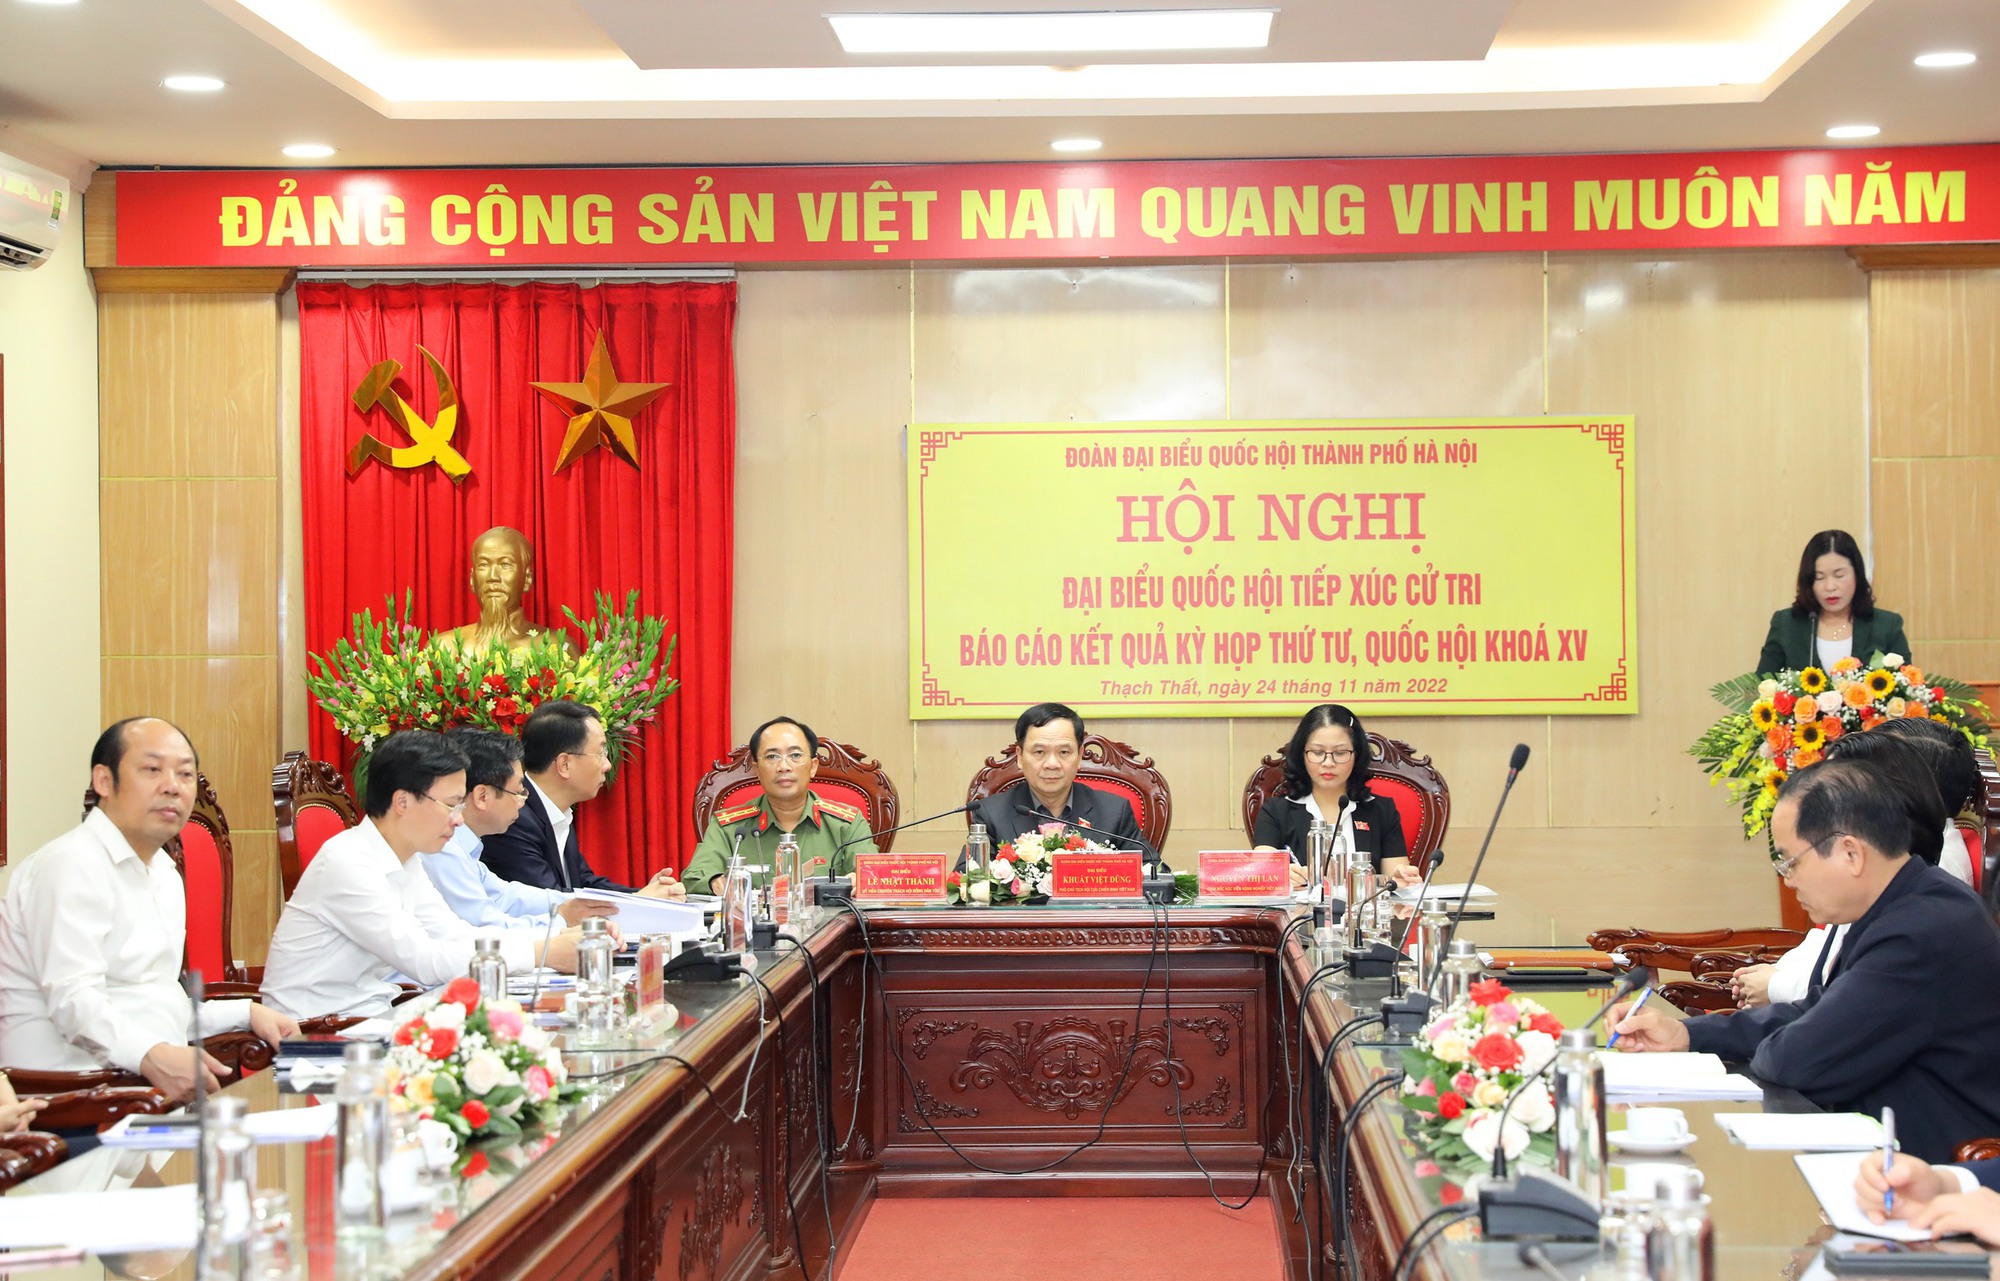 Cử tri ngoại thành Hà Nội mong được cấp nước sạch, khắc phục tình trạng ô nhiễm môi trường - Ảnh 1.